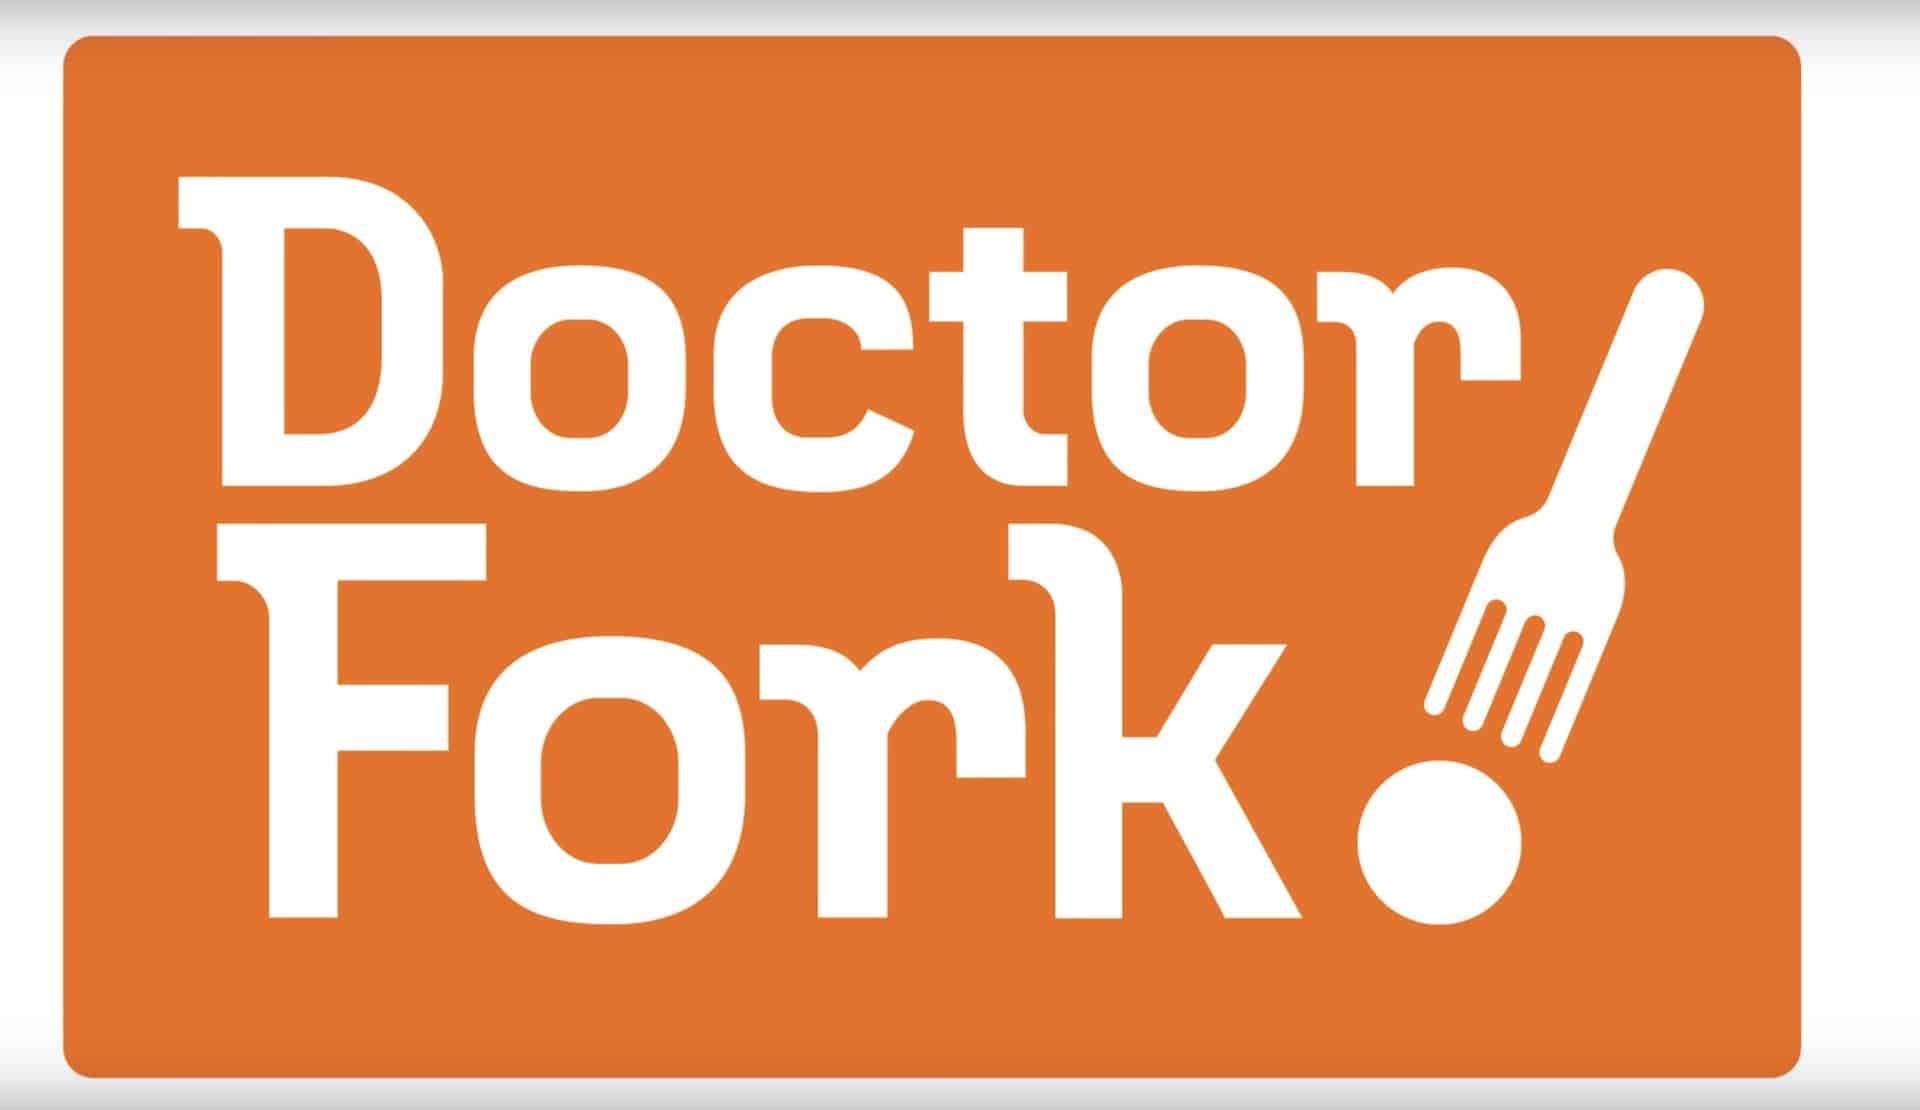 Doctor Fork la fausse marque créée par Google pour tester les publicités sur YouTube